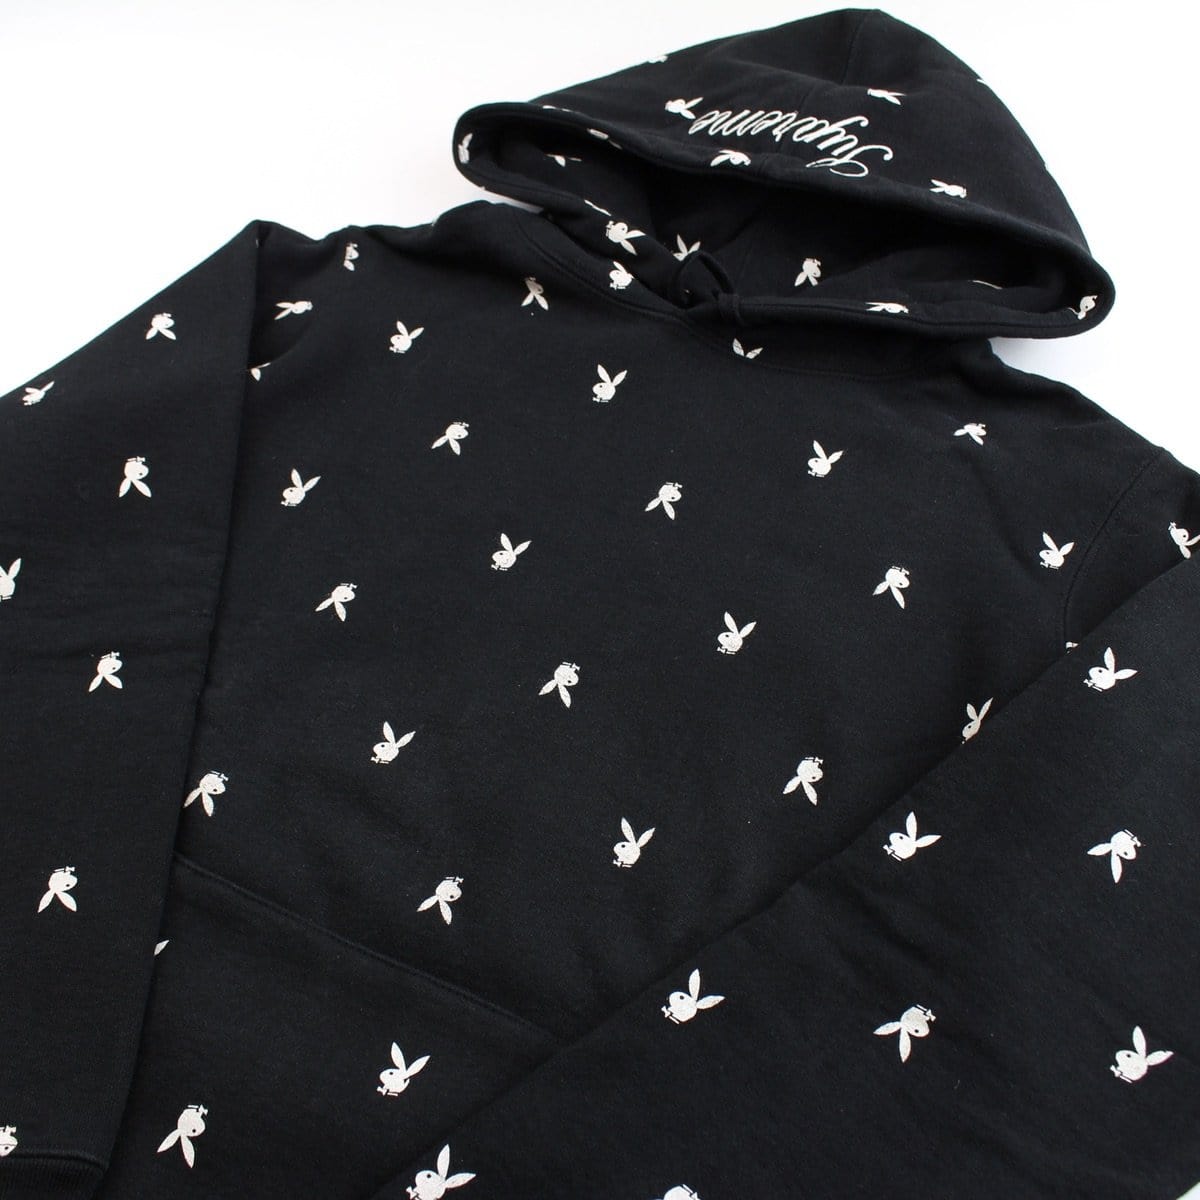 supreme x playboy hoodie black 2015 - SaruGeneral